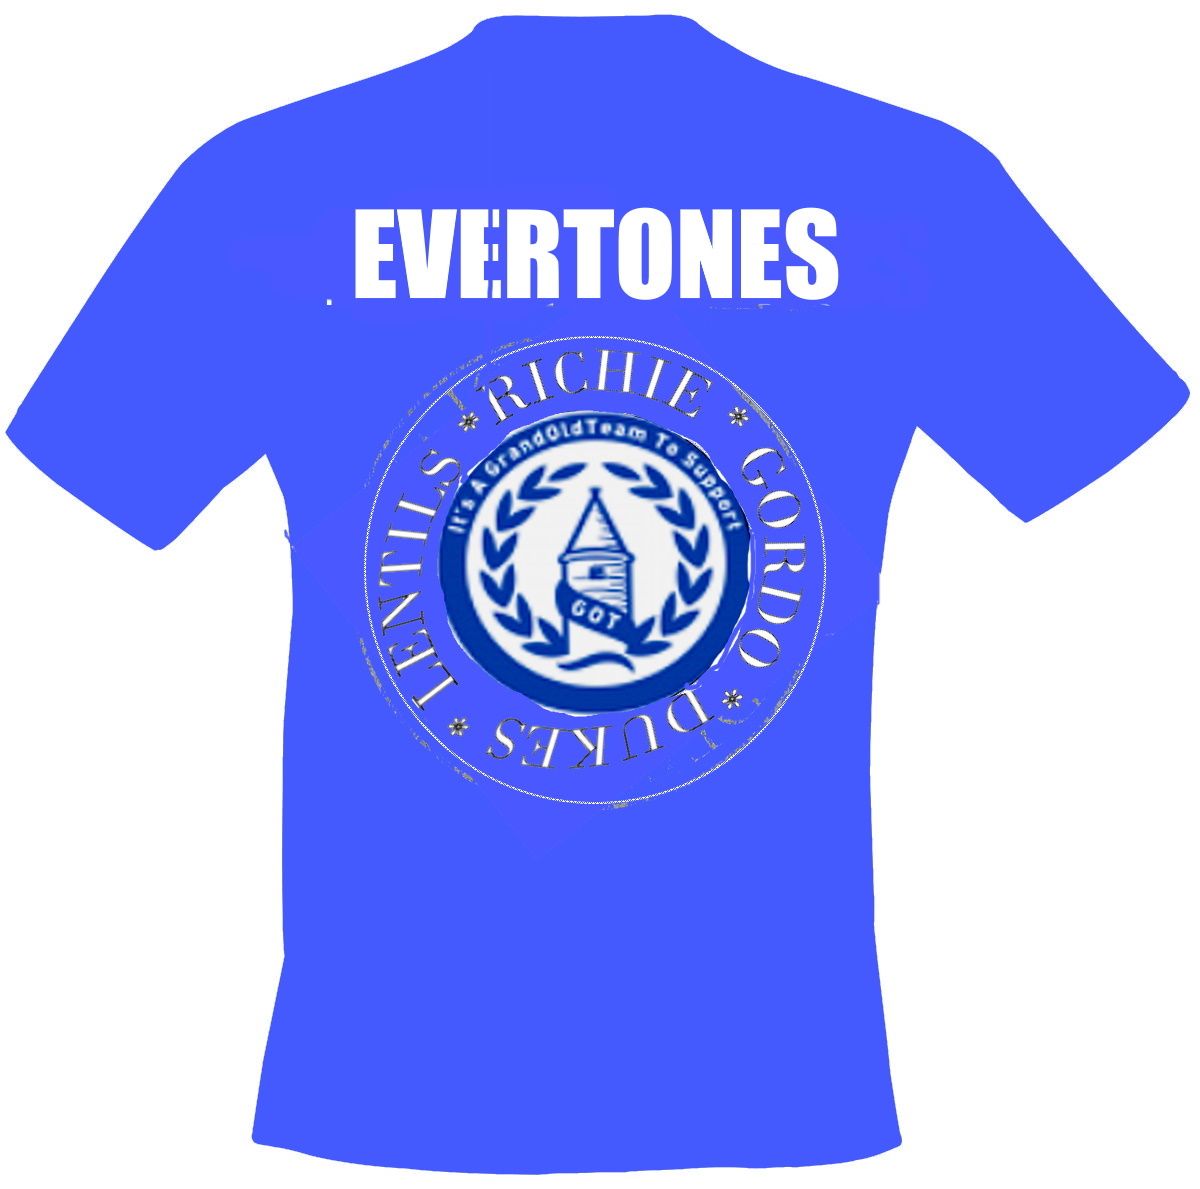 Evertones.jpg